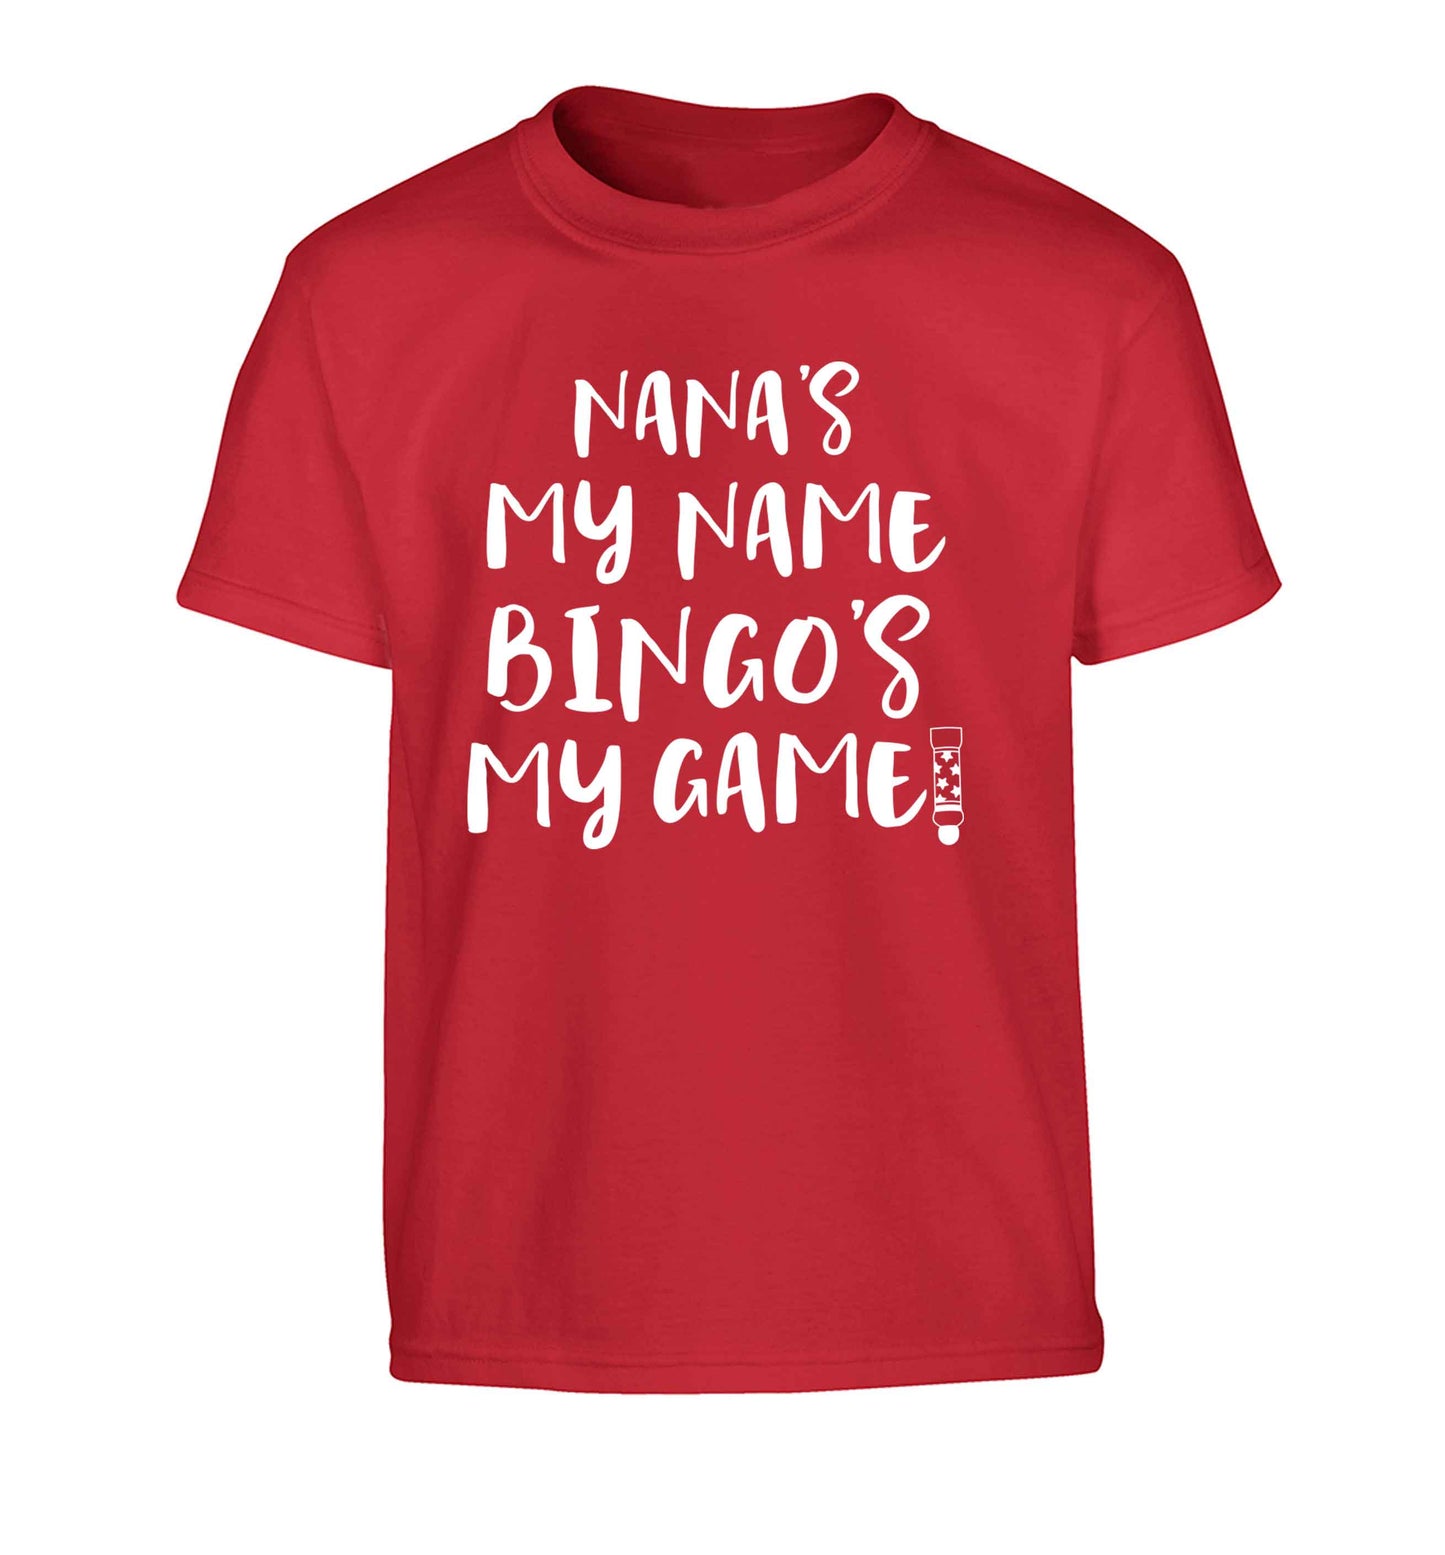 Nana's my name bingo's my game! Children's red Tshirt 12-13 Years